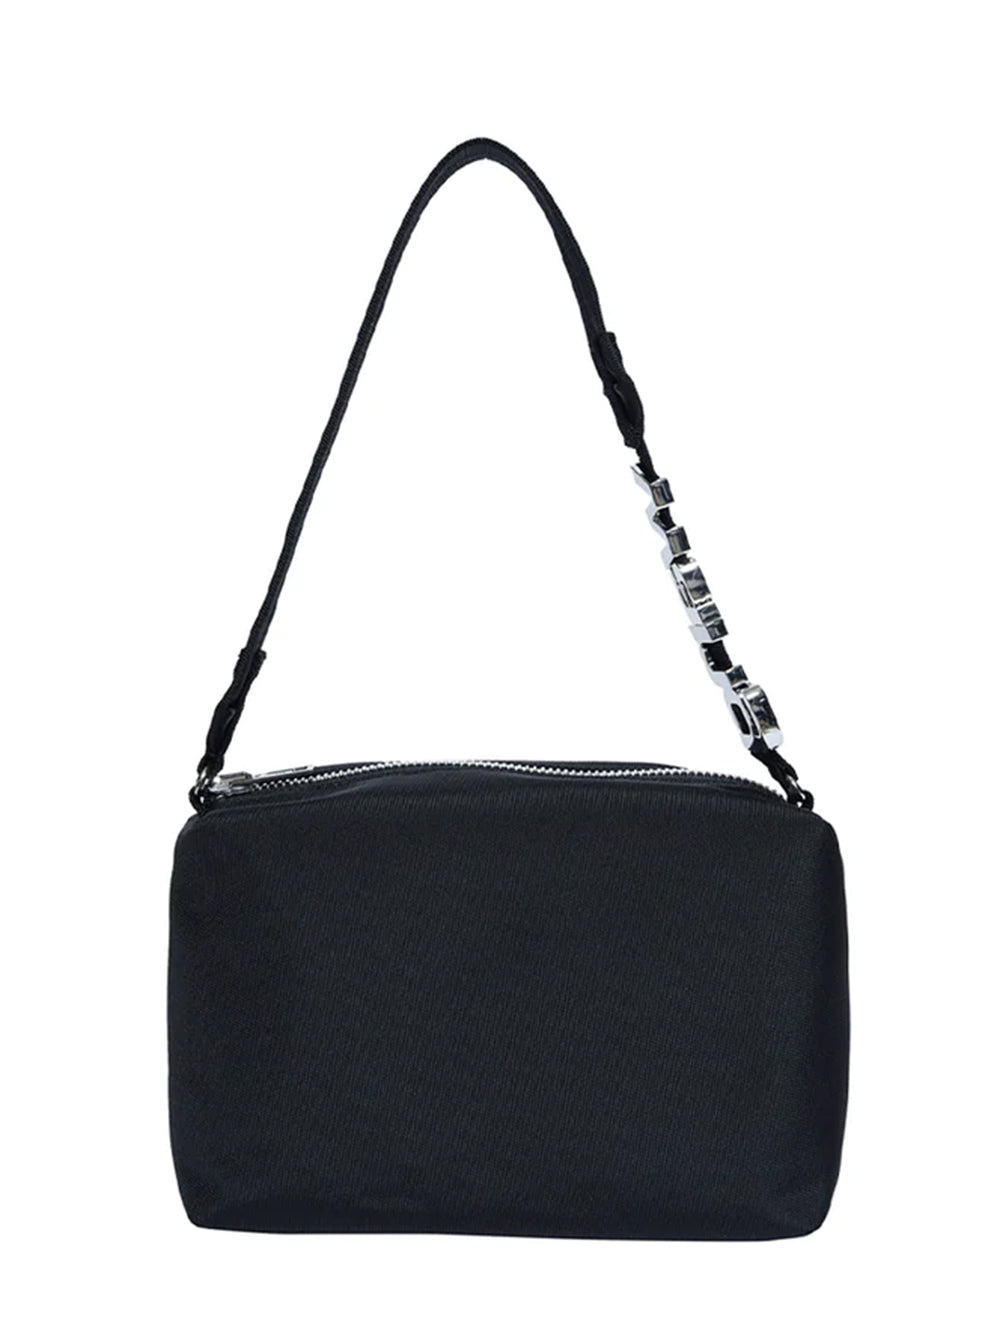 Heiress Sport Shoulder Bag in Nylon (Black)